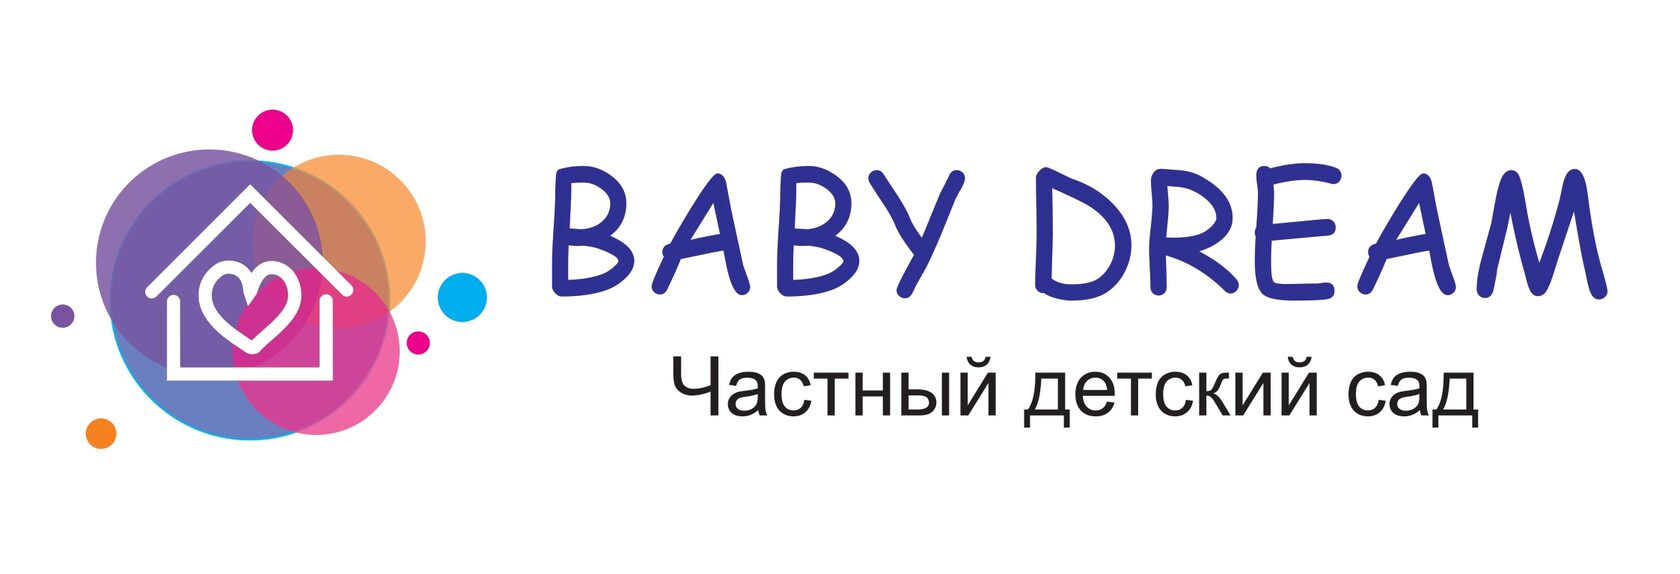  BABY DREAM частный детский сад 